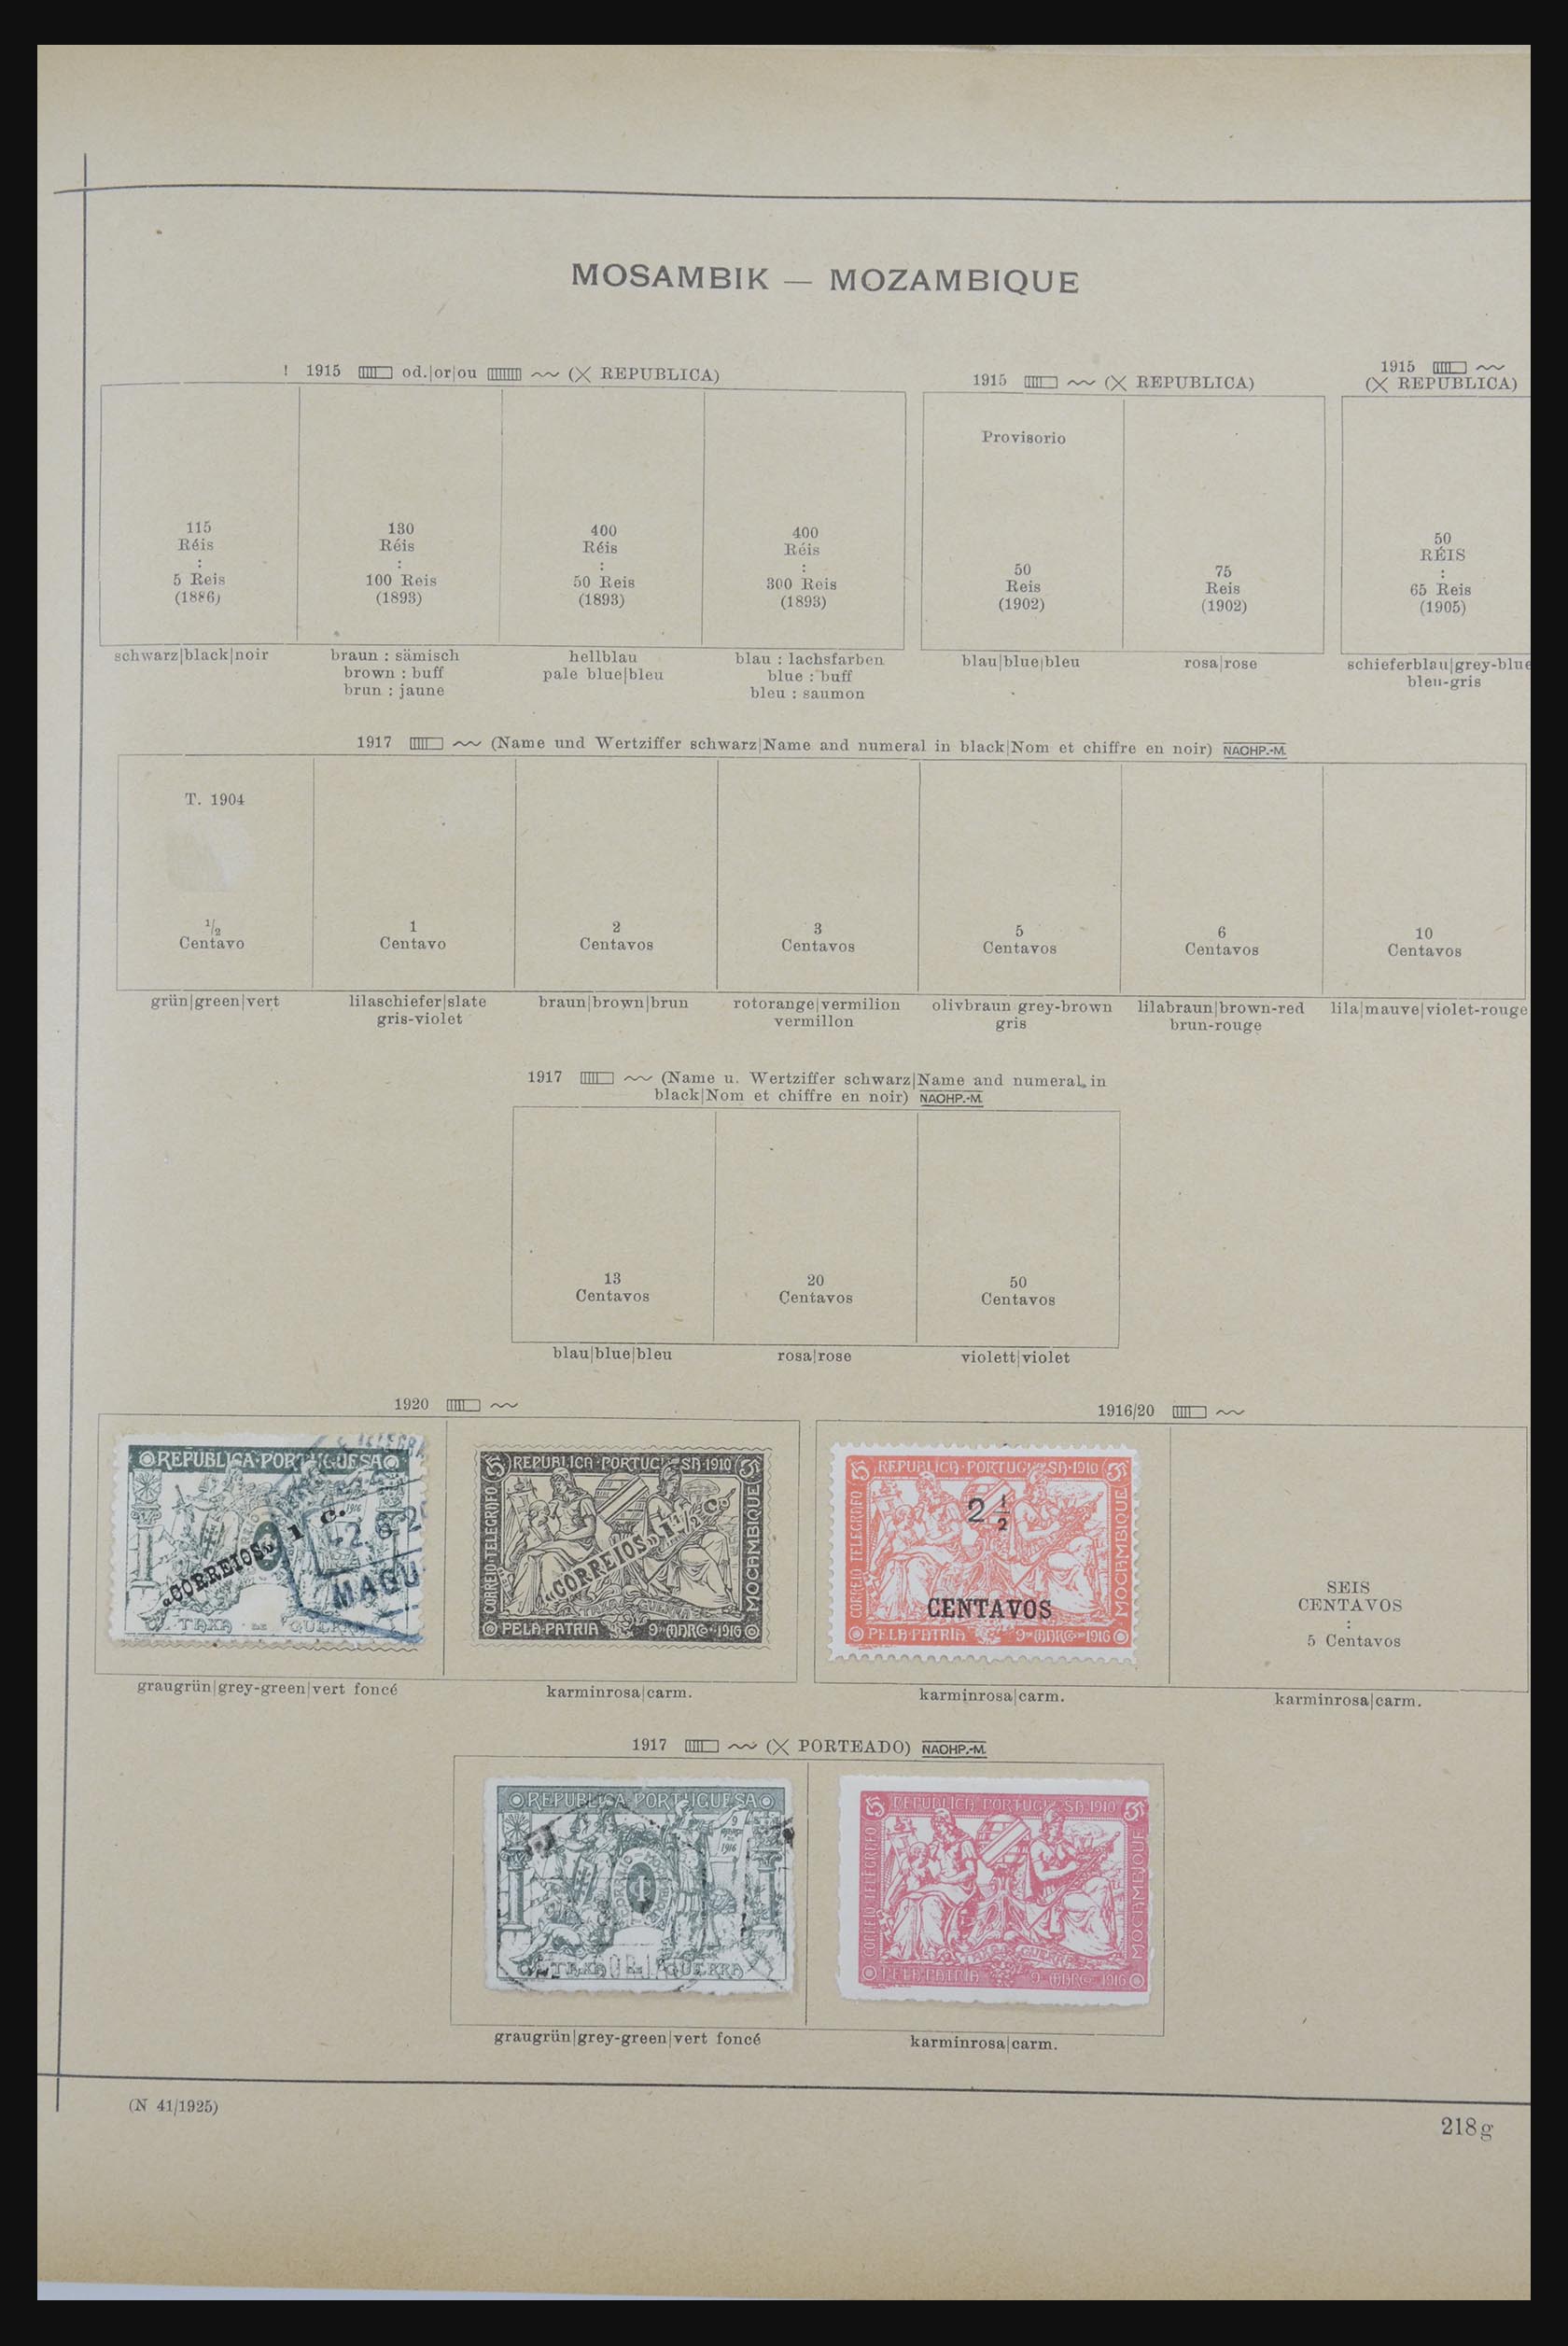 32070 101 - 32070 Portugal en koloniën 1857-1953.